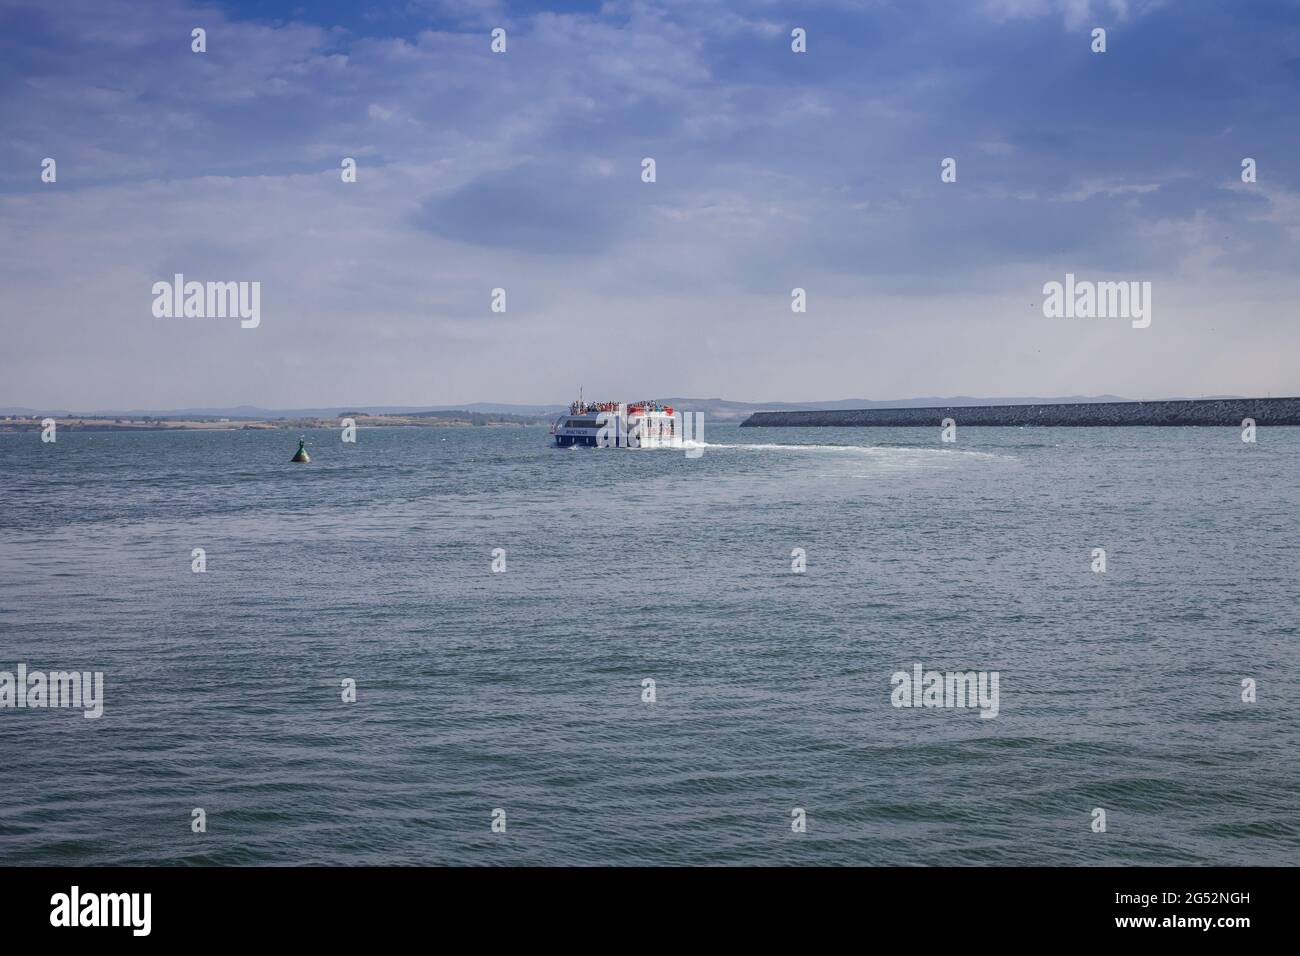 Il piccolo imbarcazione turistica da diporto 'Anastasia' salpa dal porto lungo il faro contro il cielo blu con le nuvole bianche Foto Stock